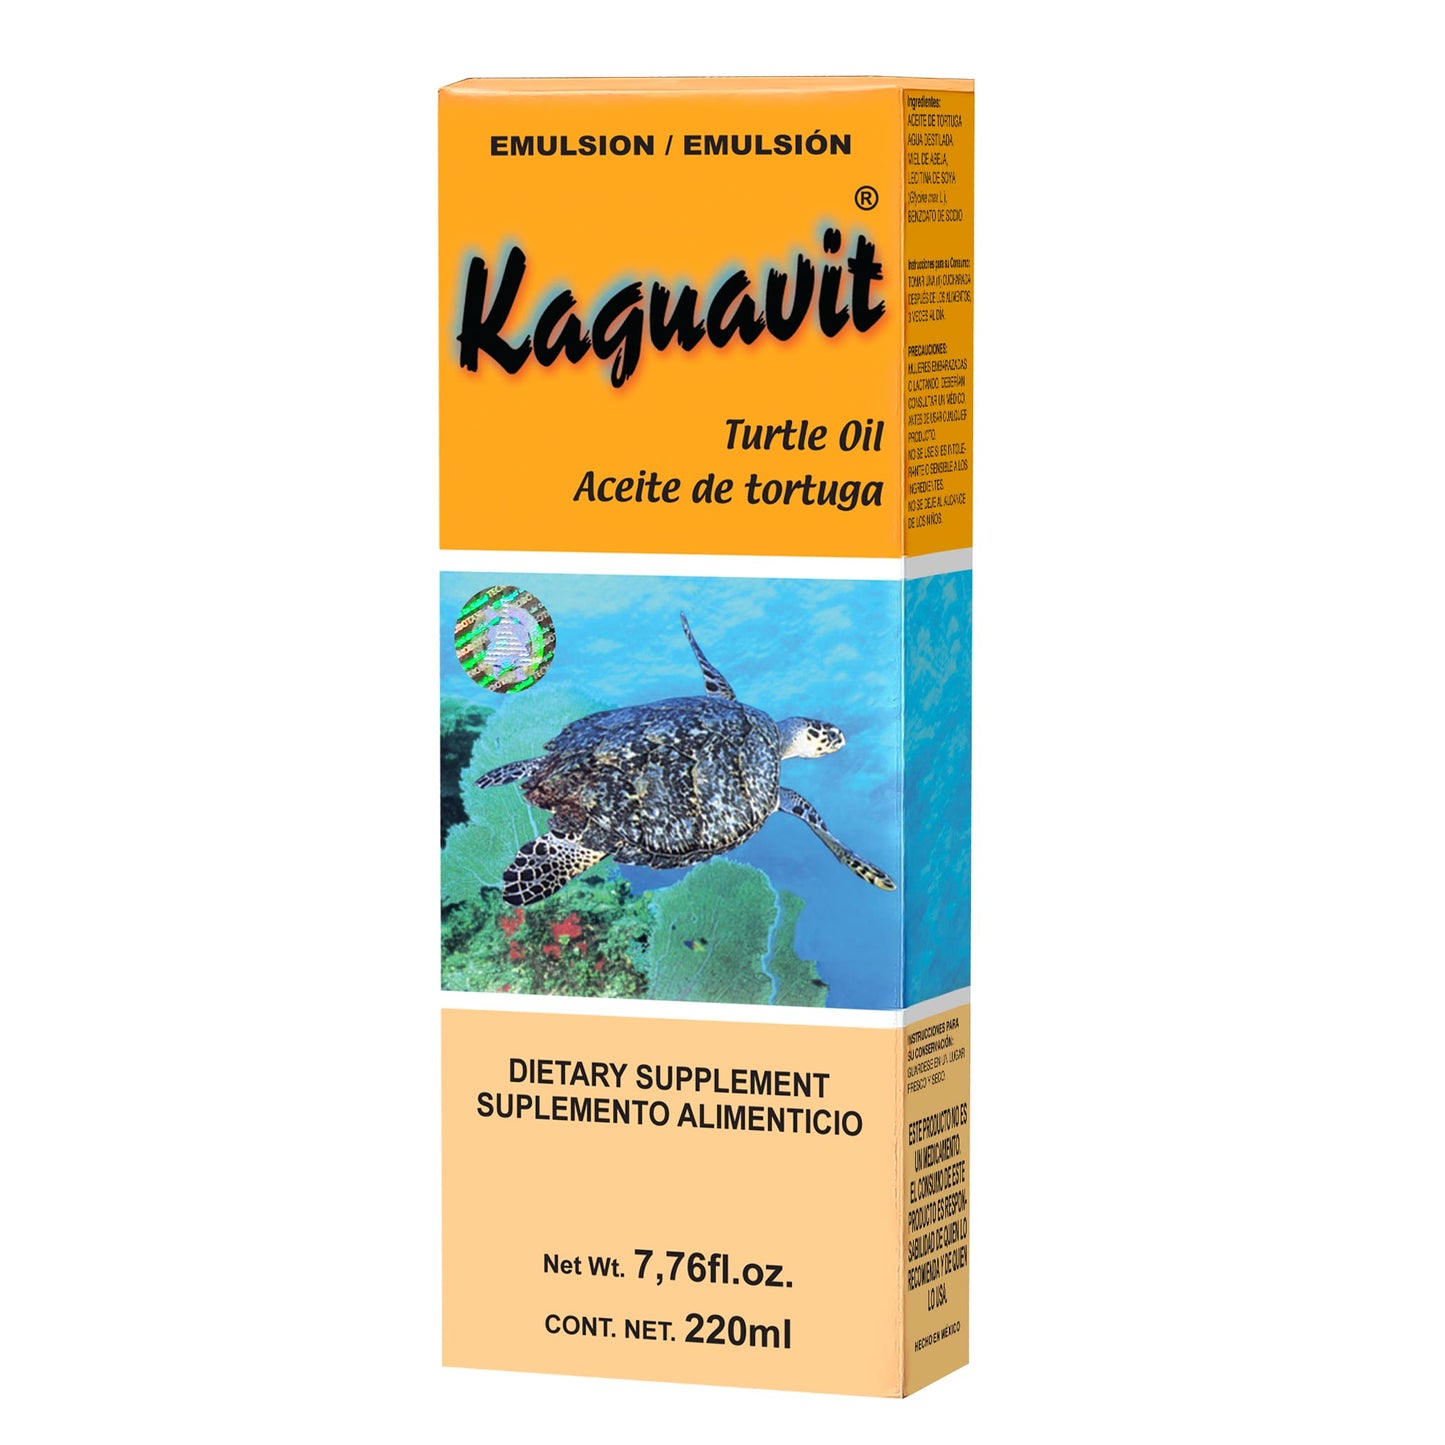 KAGUAVIT ® emulsión 220ml